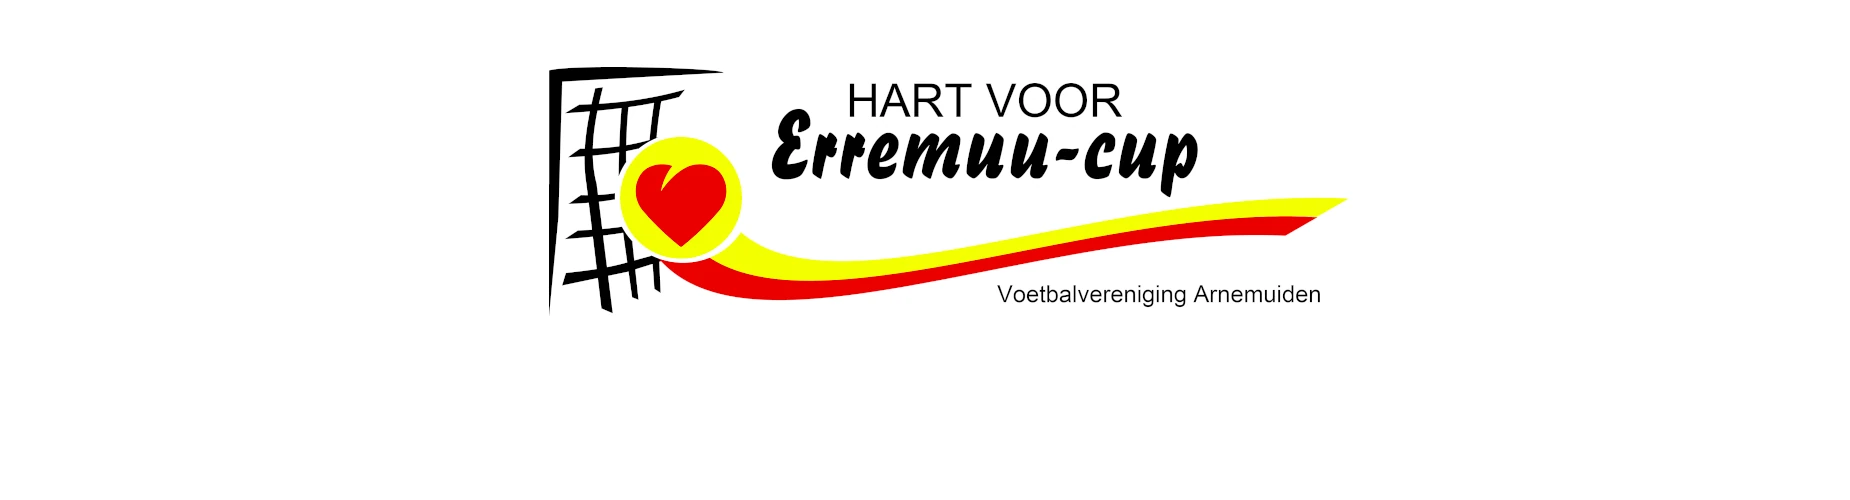 Banner - Hart voor Erremuu Cup - vv Arnemuiden - Arnemuiden